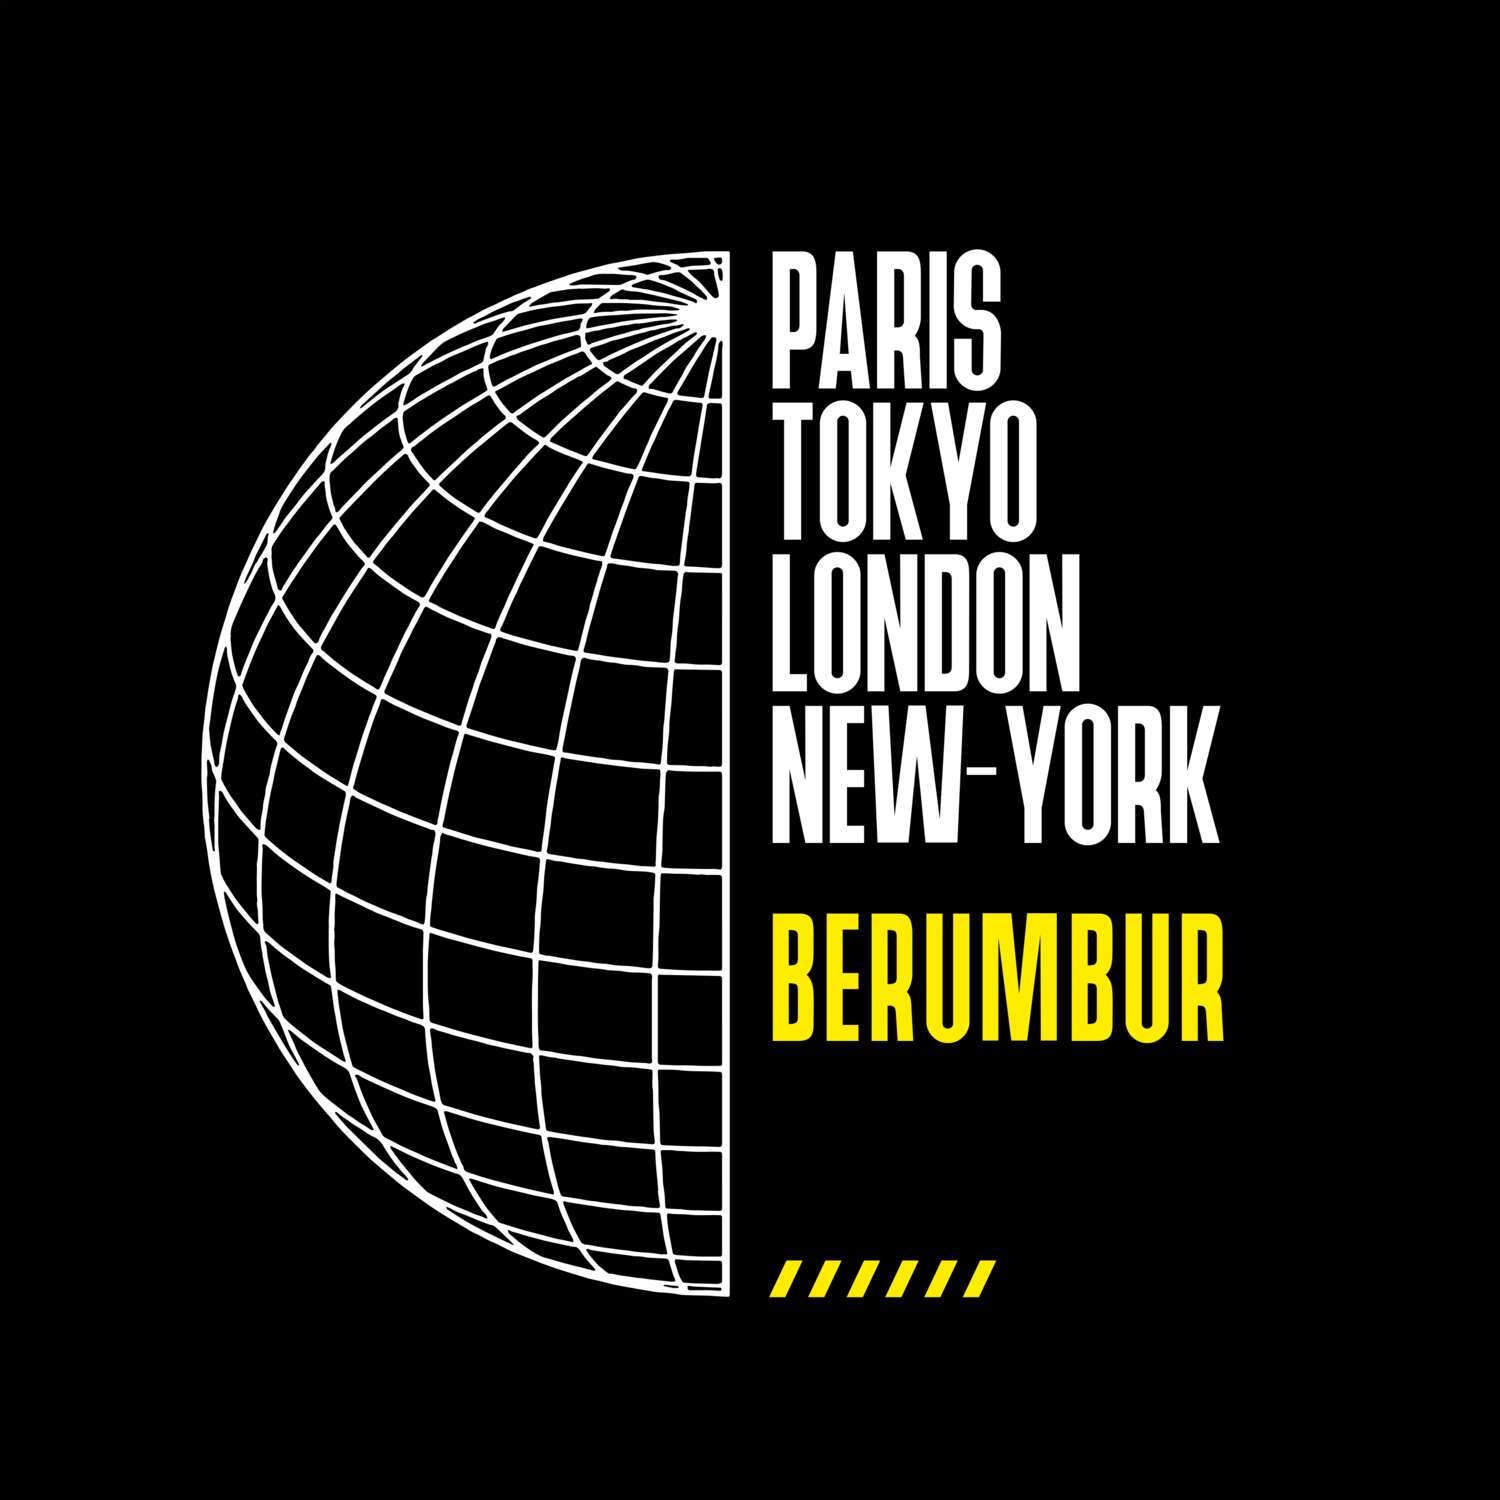 Berumbur T-Shirt »Paris Tokyo London«